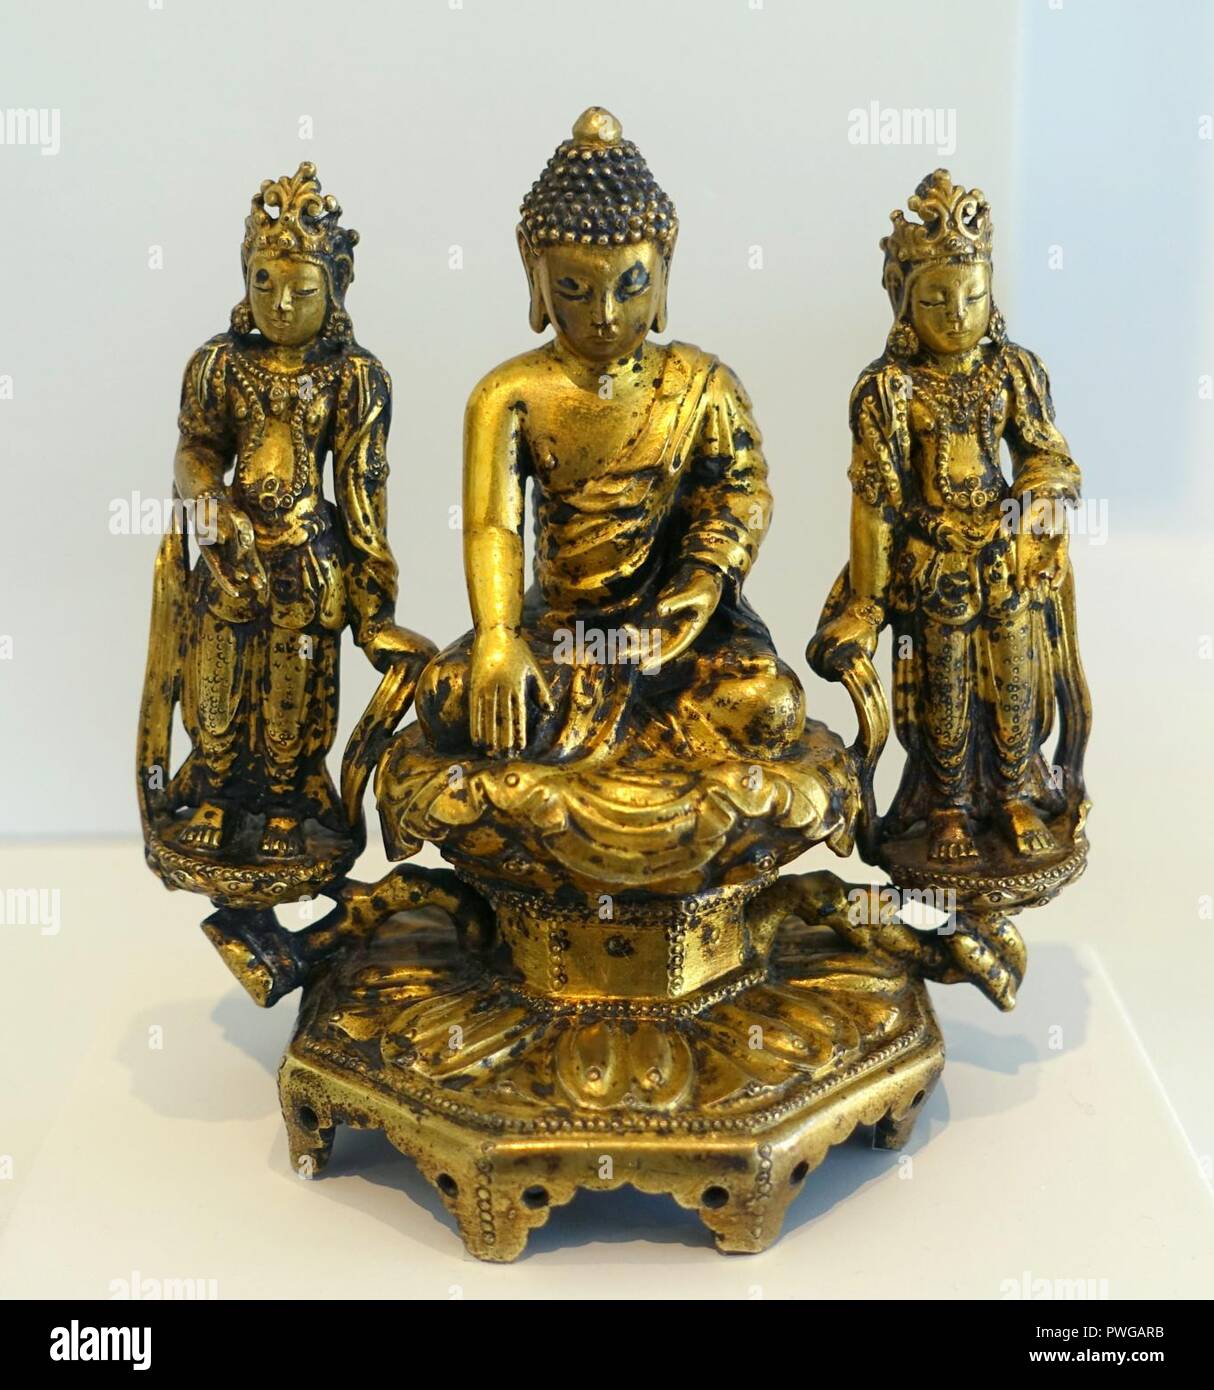 Buddhistische Triade, Amitabha Buddha mit zwei Boddhisattvas, wahrscheinlich Avalokiteshvara und Mahasthamaprapta, Korea, Choson Dynastie, Mitte 1400 s, vergoldetem Silber Stockfoto